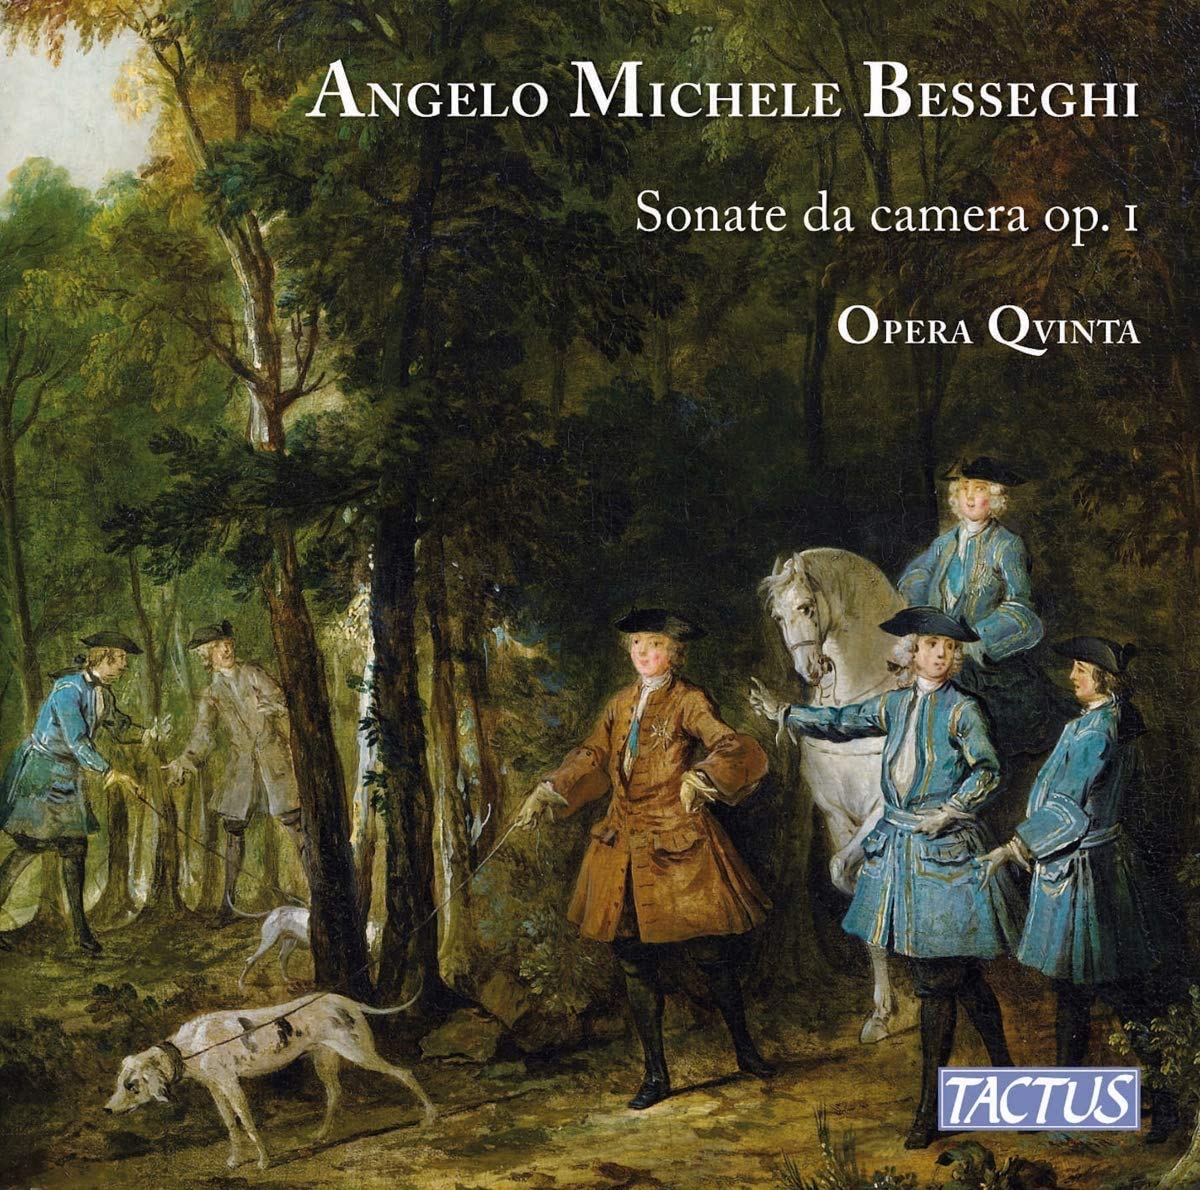 Audio Cd Angelo Michele Besseghi - Sonate Da Camera Op.1 2 Cd NUOVO SIGILLATO EDIZIONE DEL SUBITO DISPONIBILE